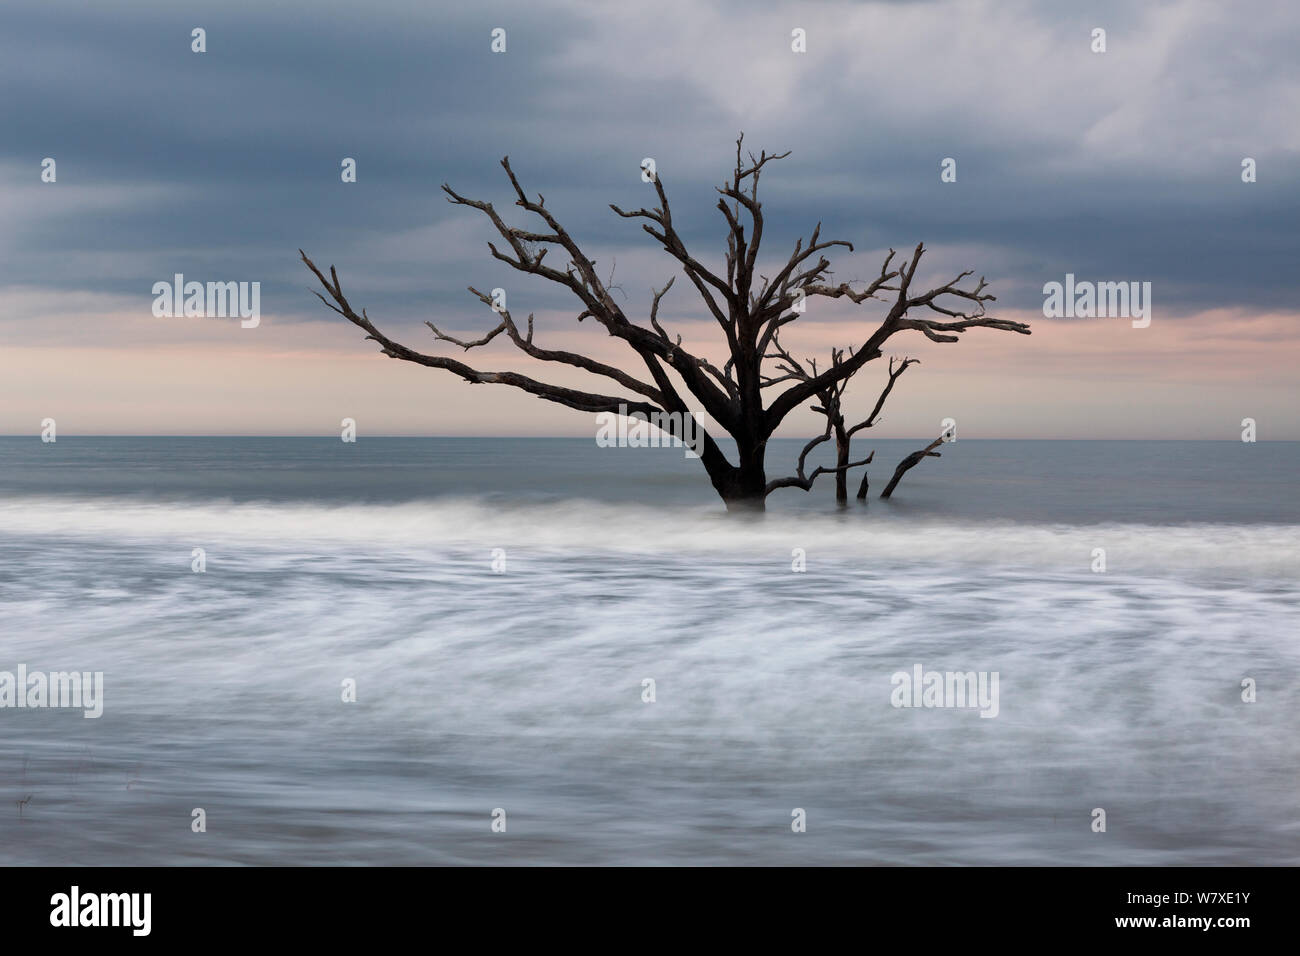 Toter Baum im Meer, Boneyard Strand in der Botany Bay Plantation Wildlife Management Area auf Edisto Island, South Carolina, USA. Ändern der Gezeiten haben sie umgewandelt, was einmal war der Wald in einem Strand. Stockfoto